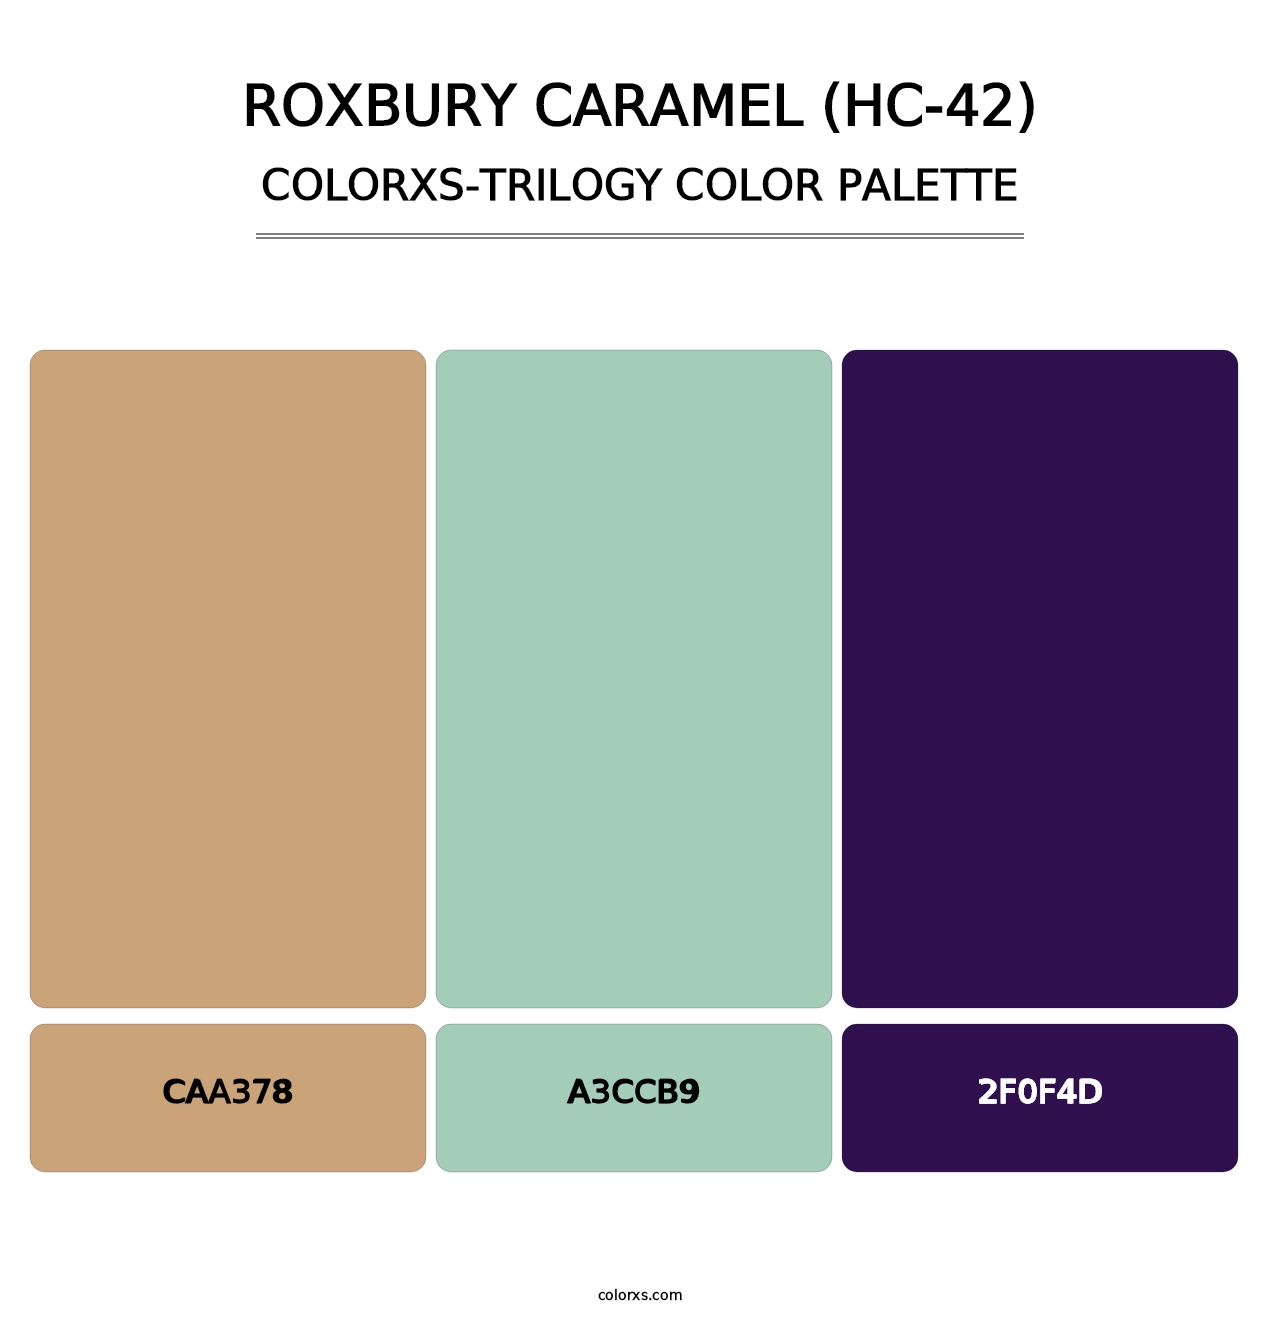 Roxbury Caramel (HC-42) - Colorxs Trilogy Palette